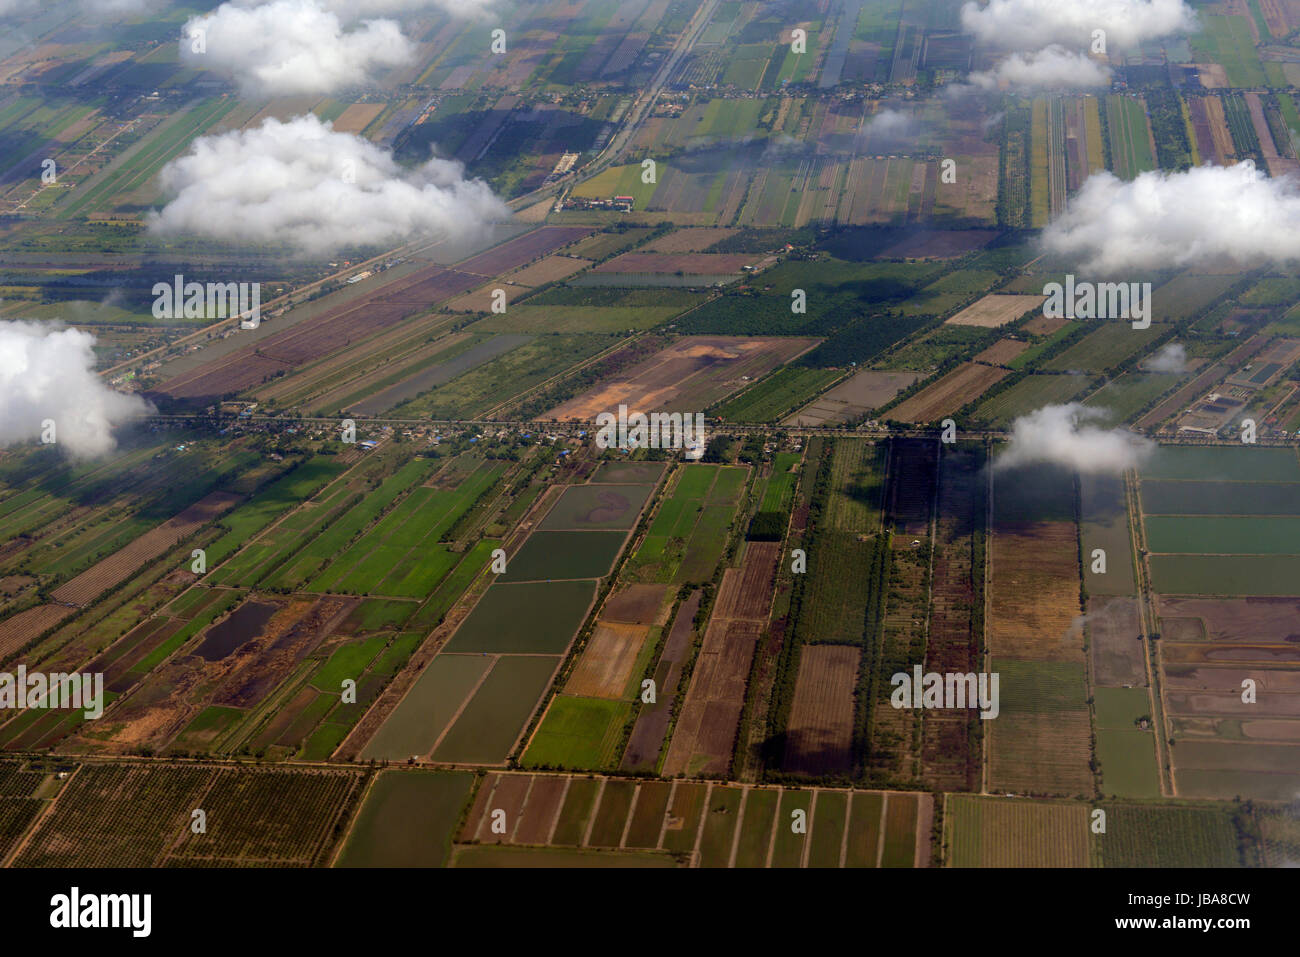 Die Landschaft mit Landwirtschaftlichen betrieben oestlich der Hauptstadt Bangkok von Thailand in Suedostasien. Stock Photo